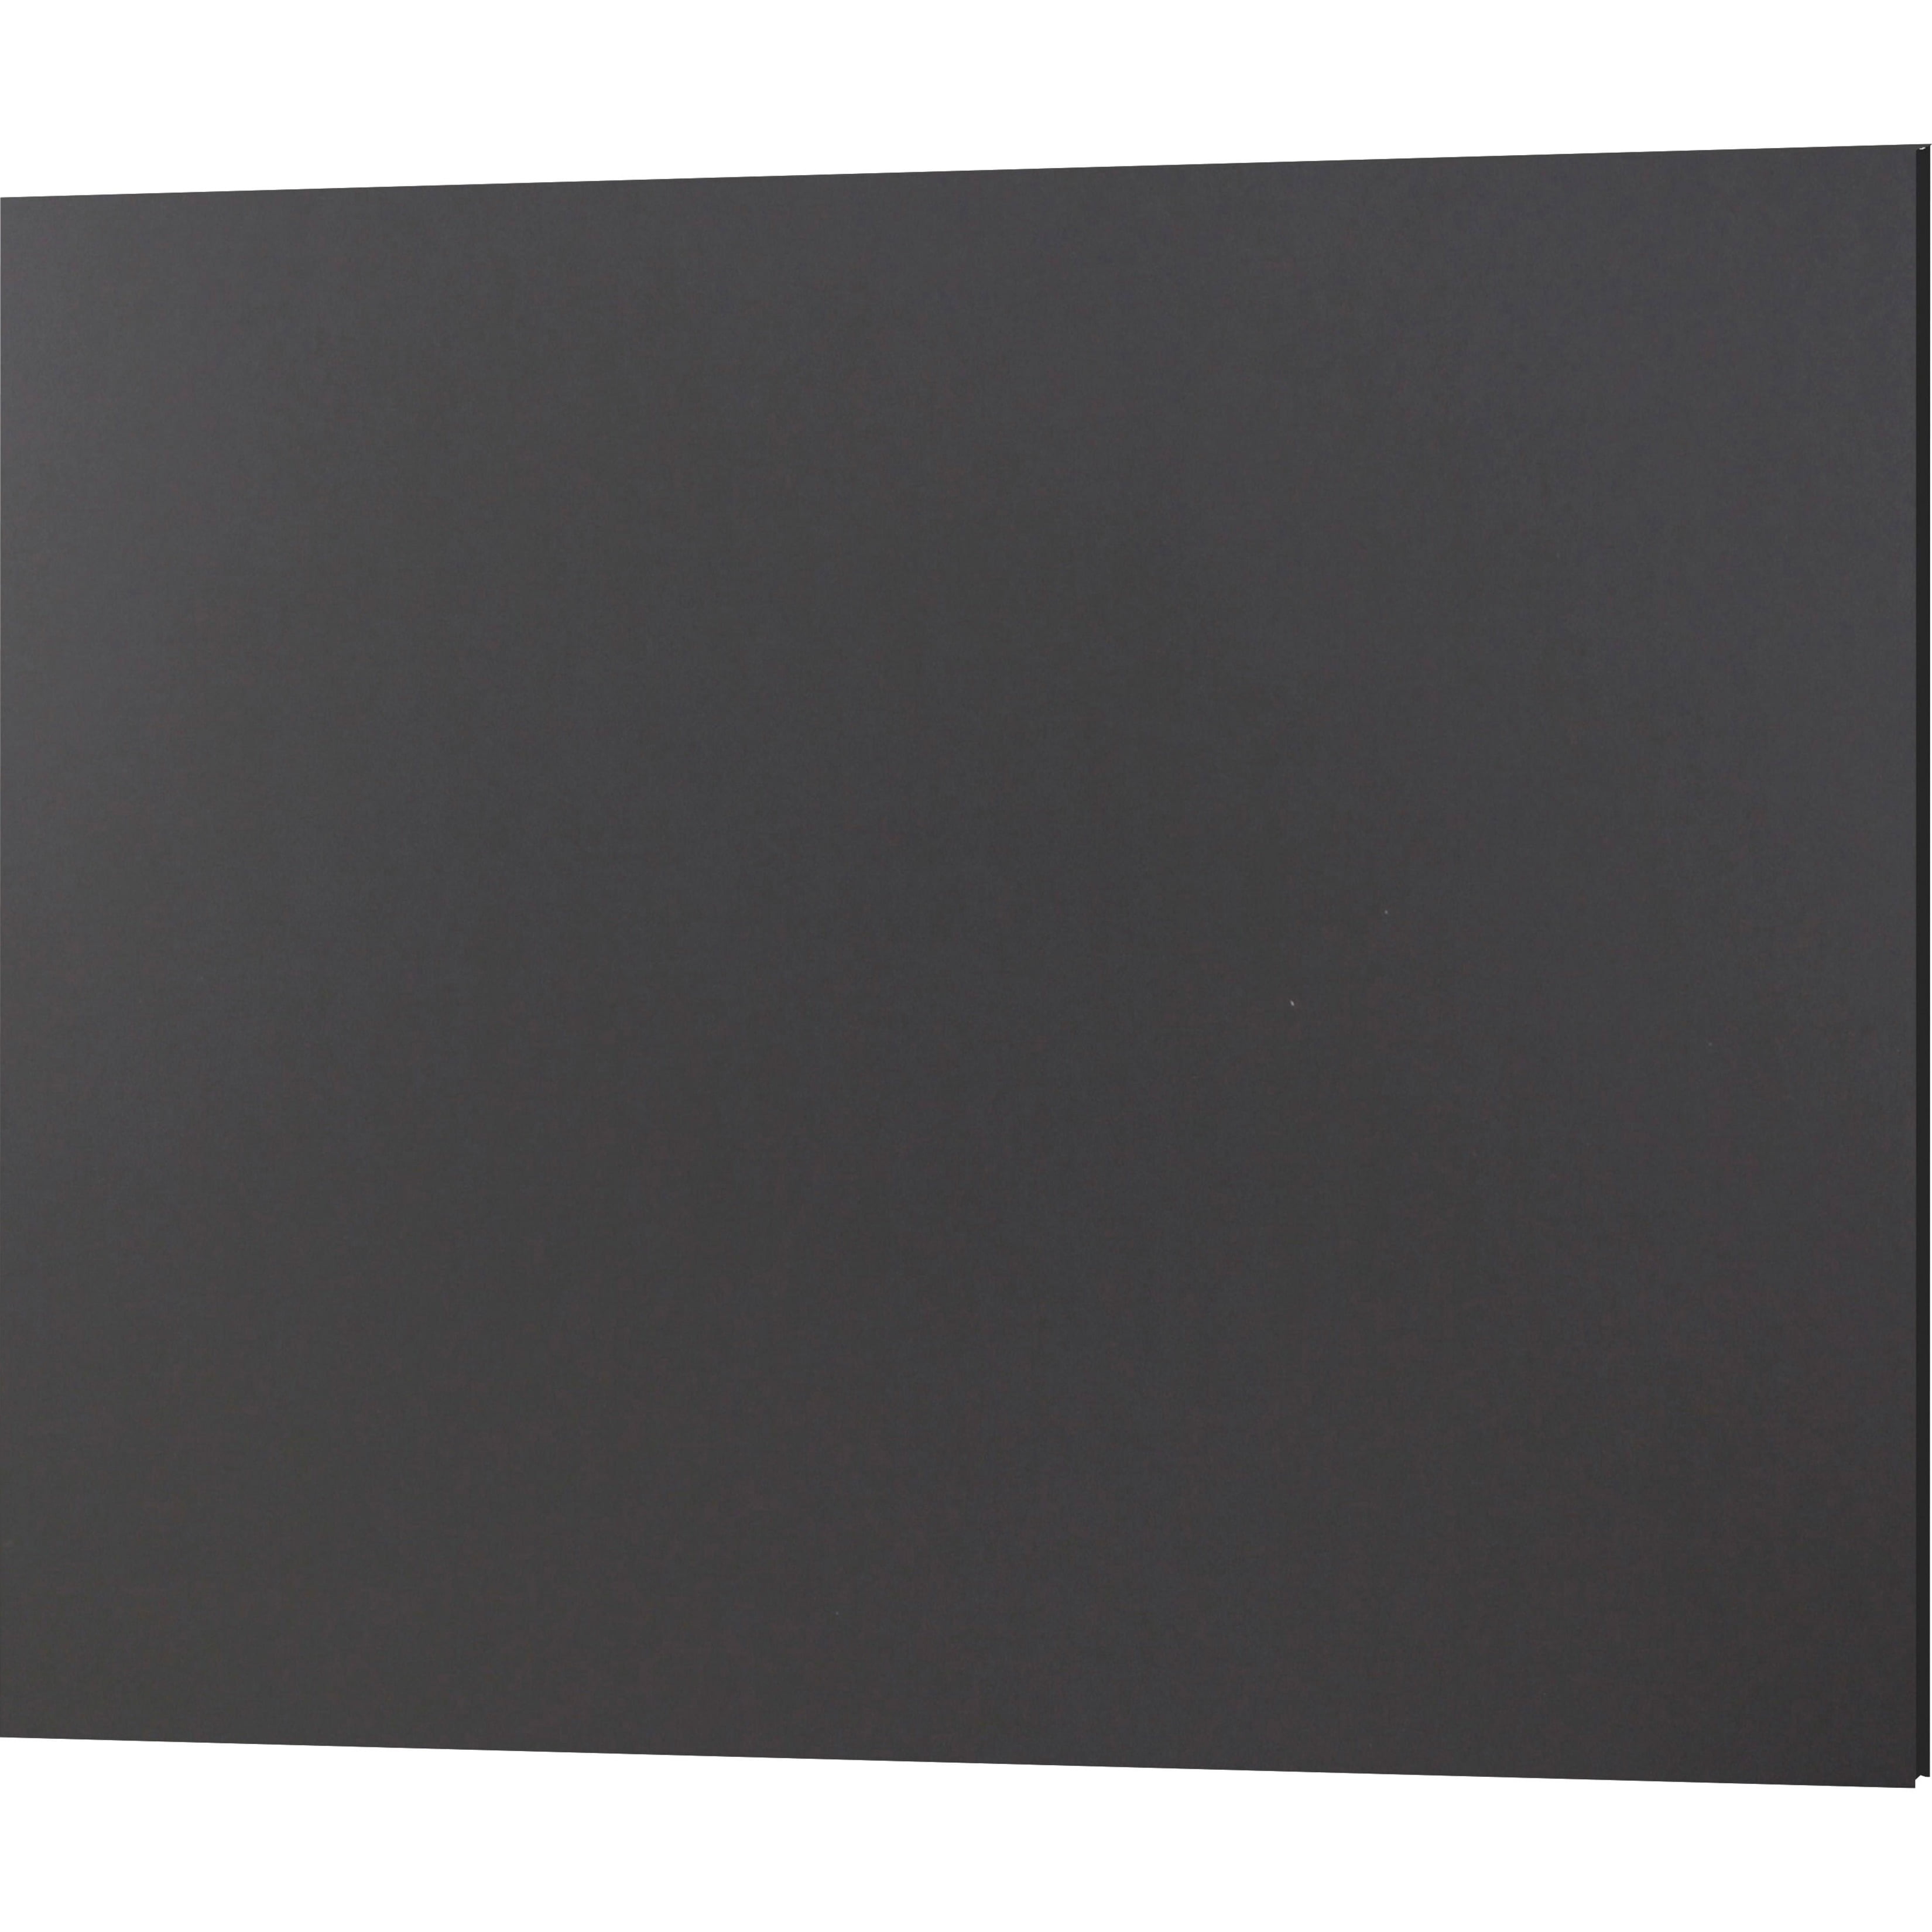 11 x 14 Inches Elmer's Foam Boards 4-Count 950024 Black/Black Core 